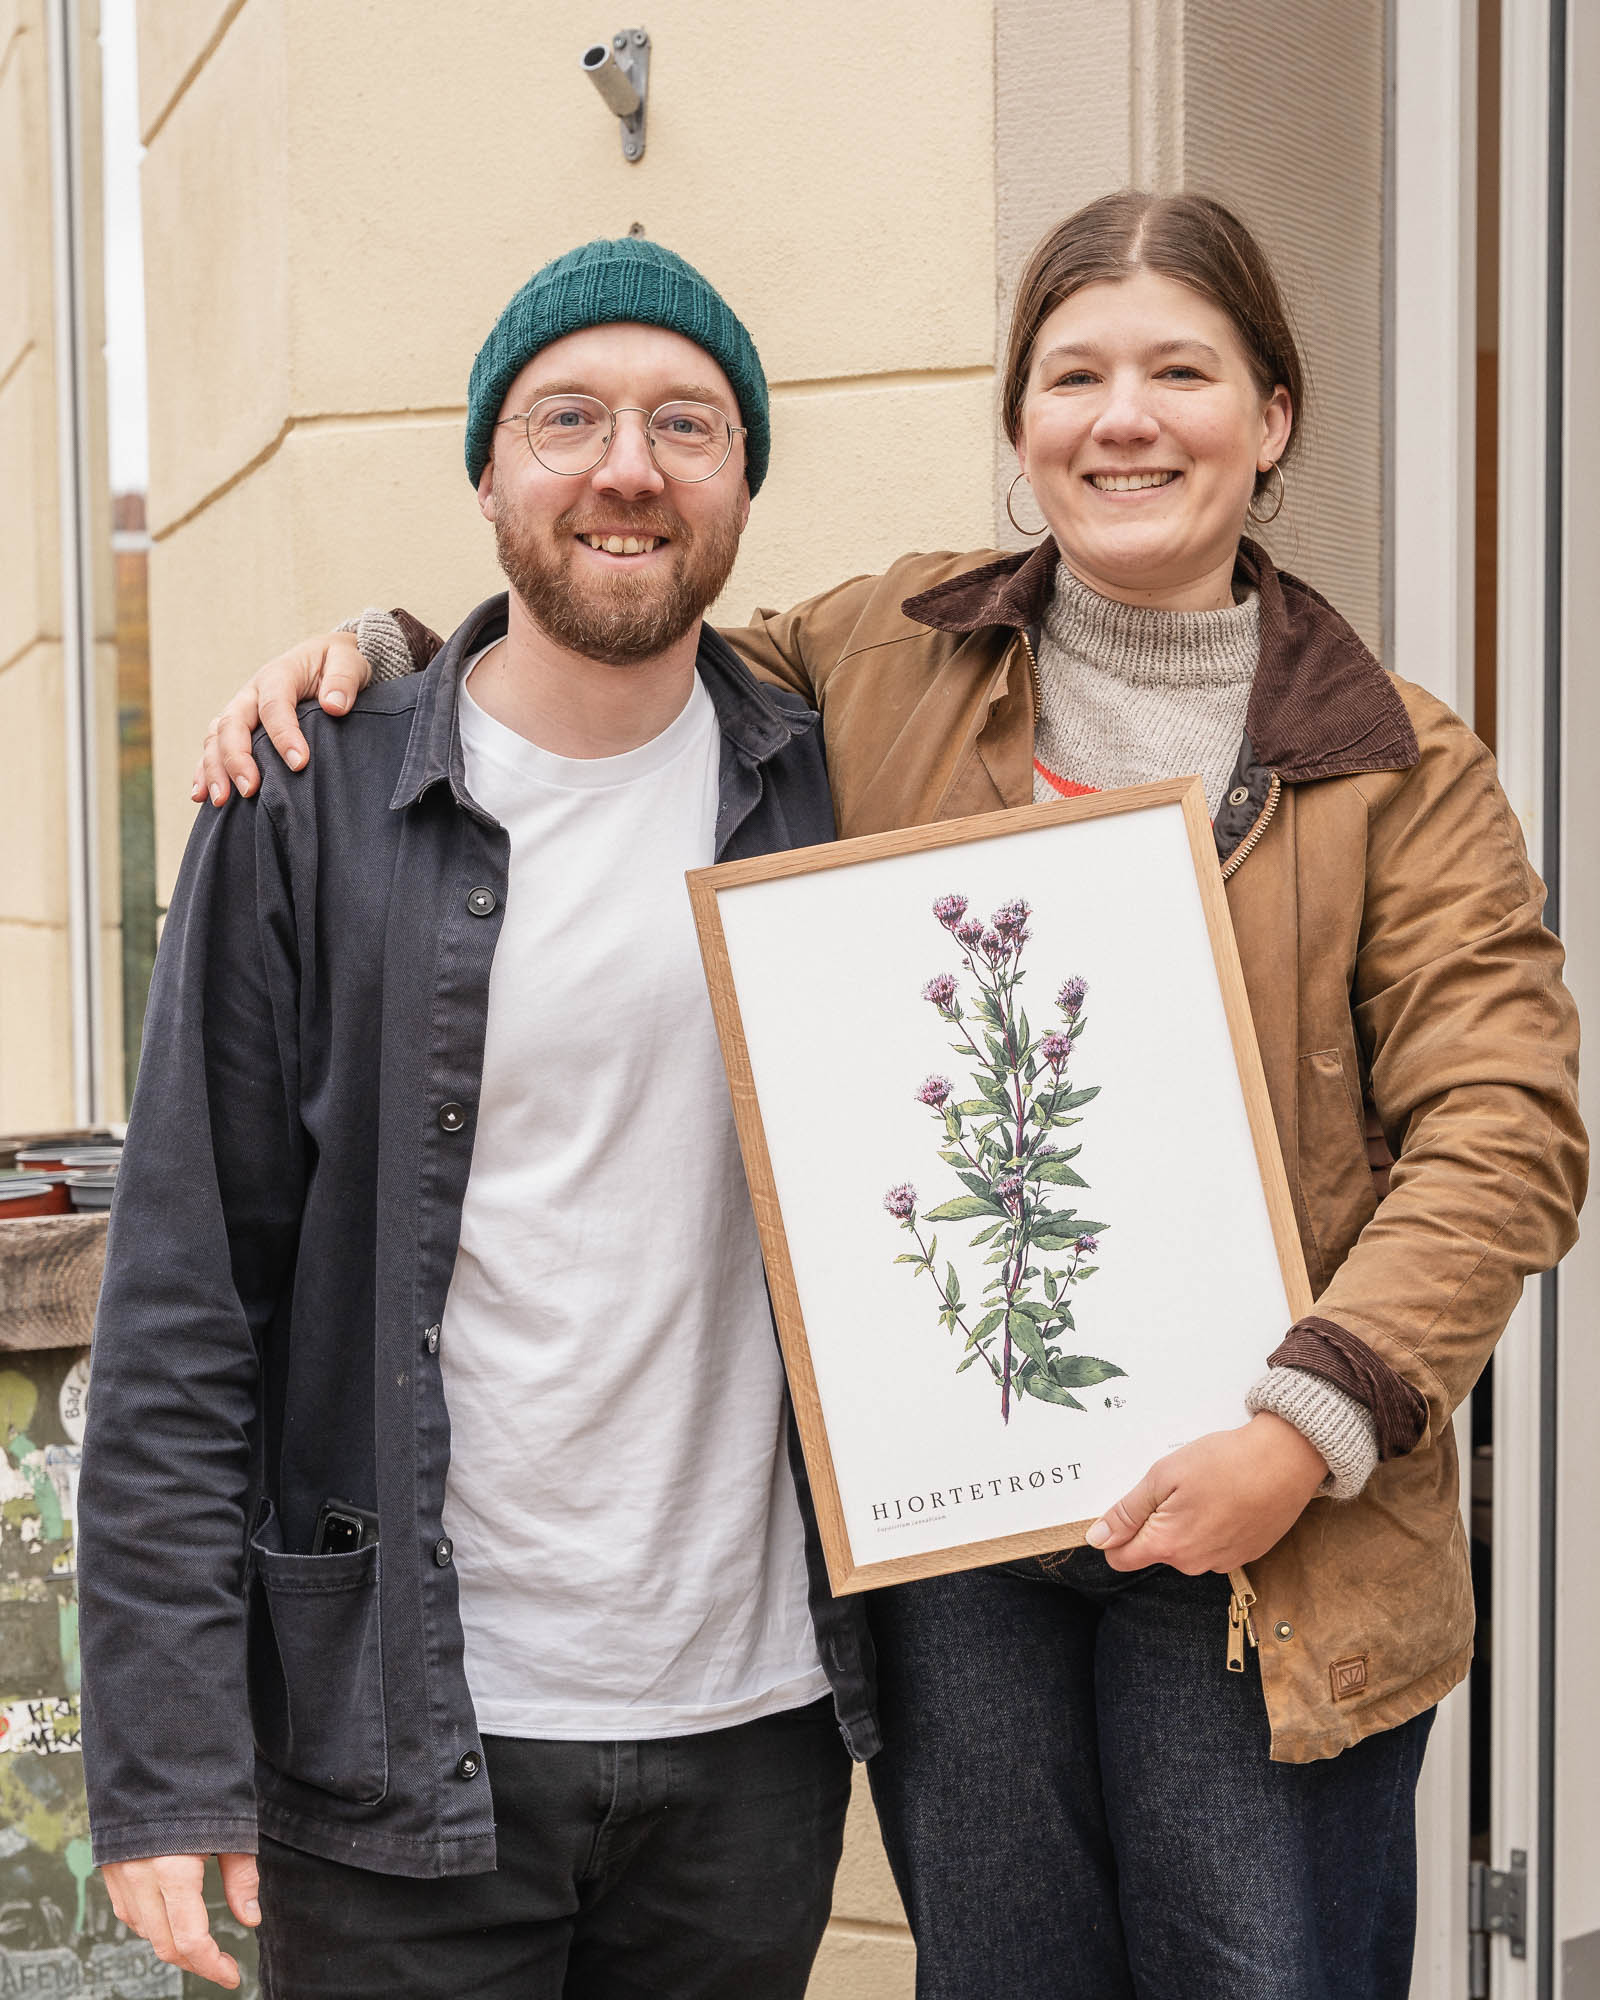 Kogebogsforfatter Camilla Skov, Vegetarisk Hverdag og tegner Stefan Lægaard Lige Linjer sikrer 8 m2 til naturen ved at sælge deres plakat med planten hjortetrøst.